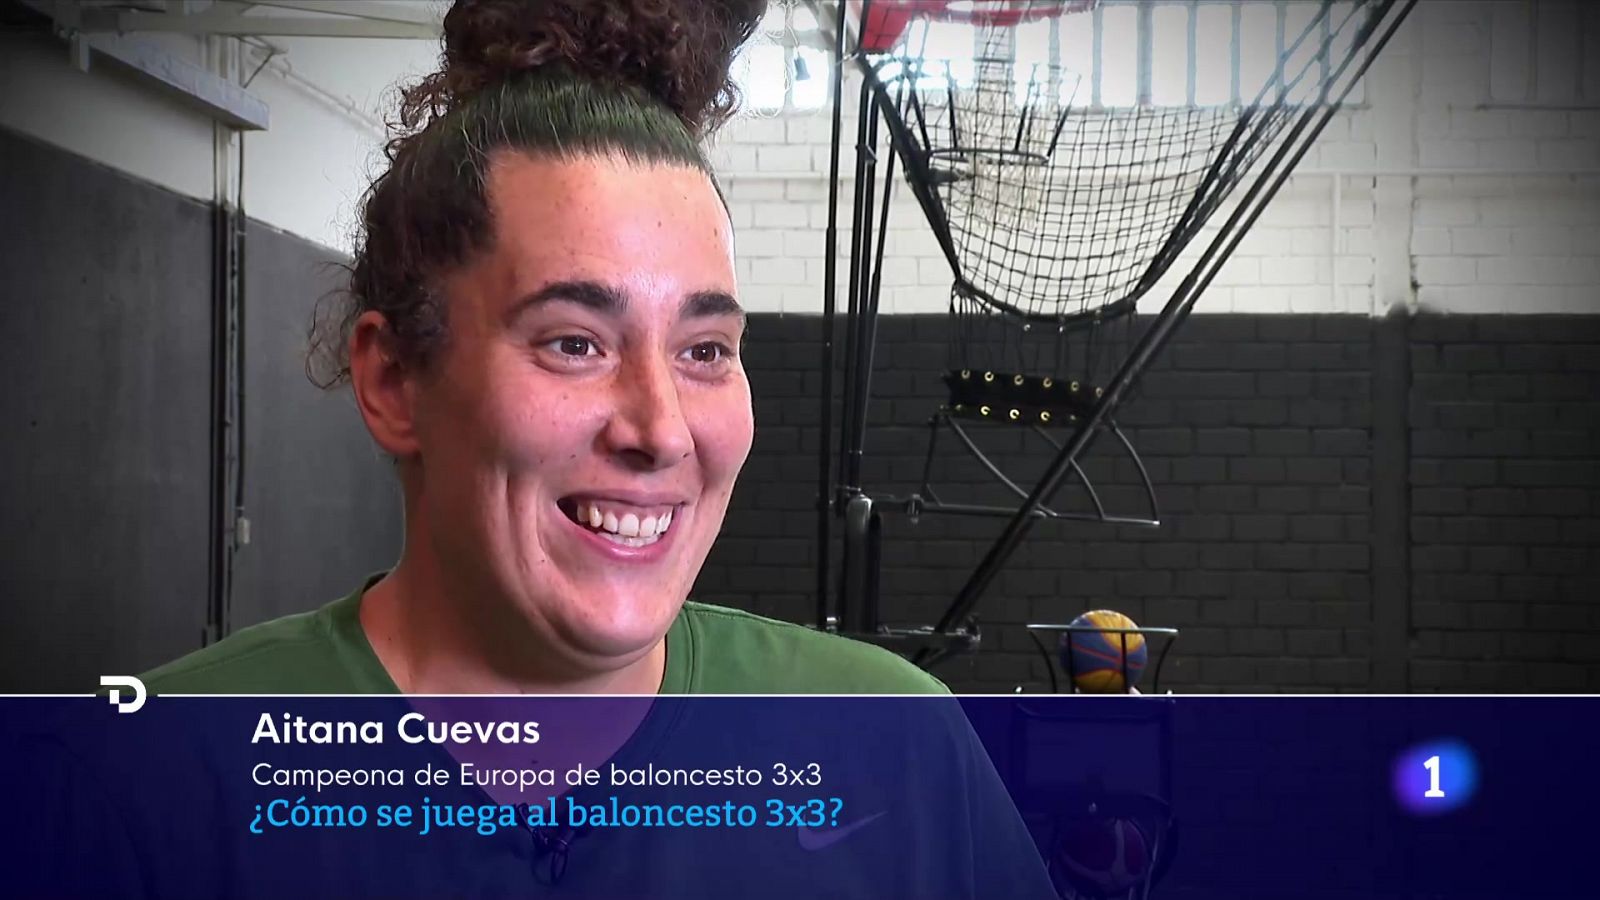 Las claves del basket 3x3 por Aitana Cuevas, eurocampeona